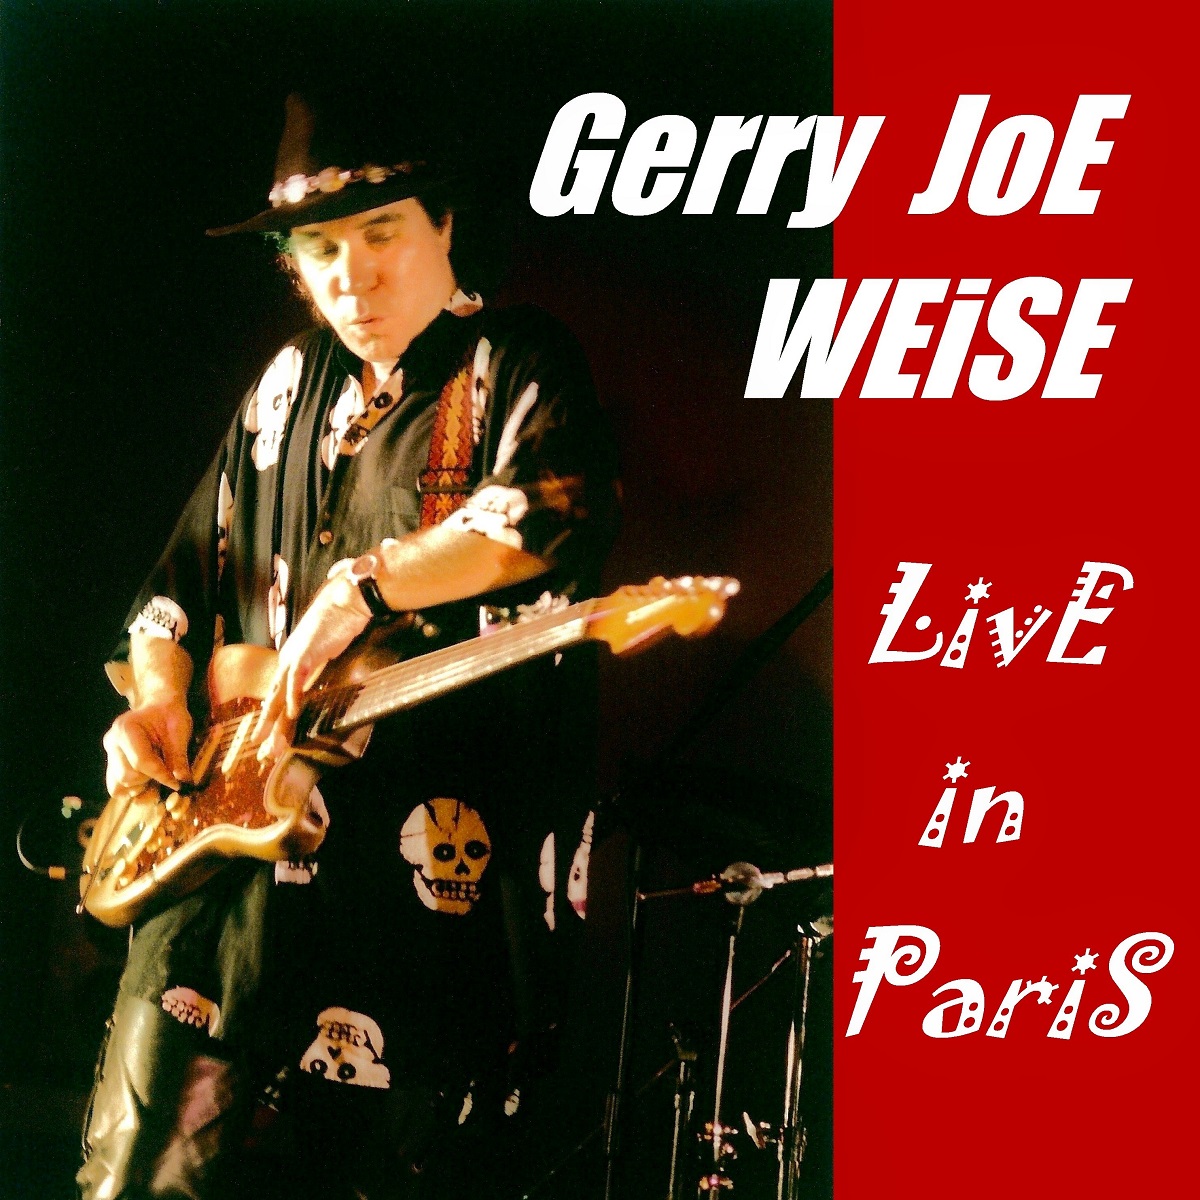 Live in Paris, album 1994